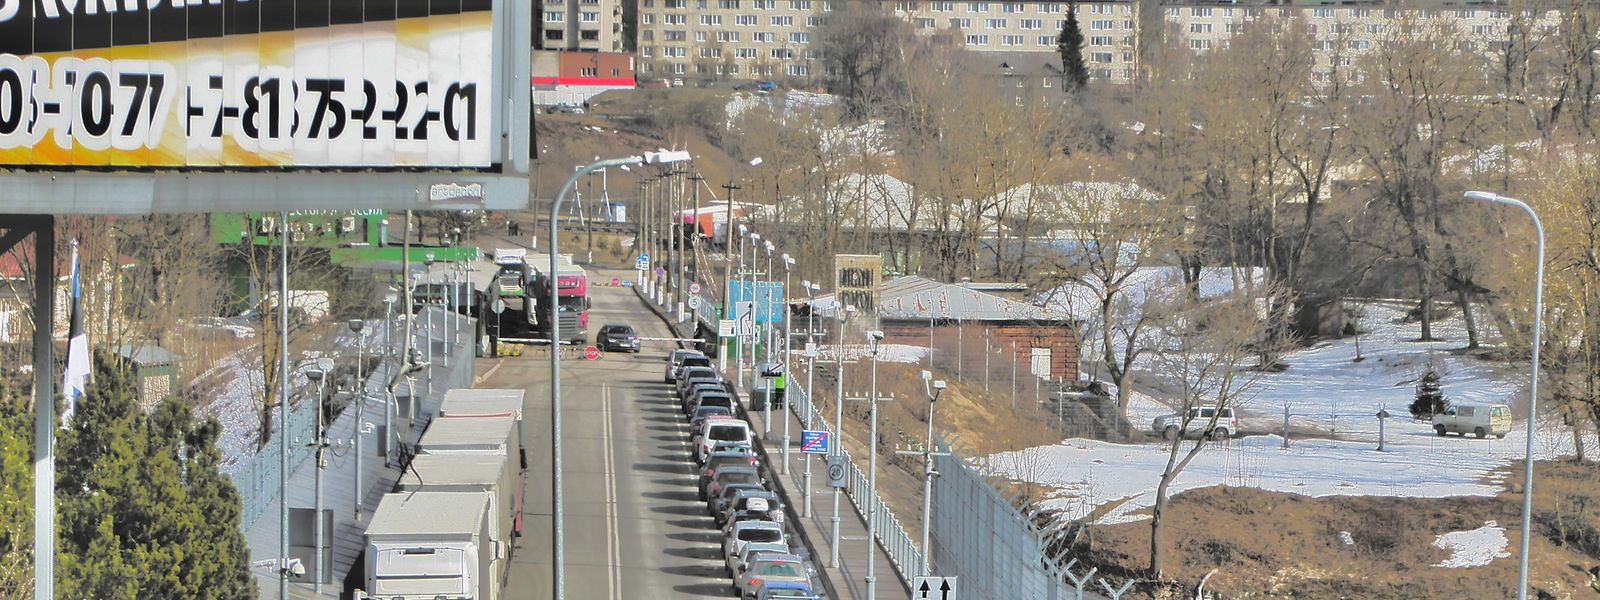 An Grenzübergängen wie hier im estnischen Narwa könnte Russen bald der Übergang verwehrt werden. Nawalny-Vertrauter Milow kritisiert das.